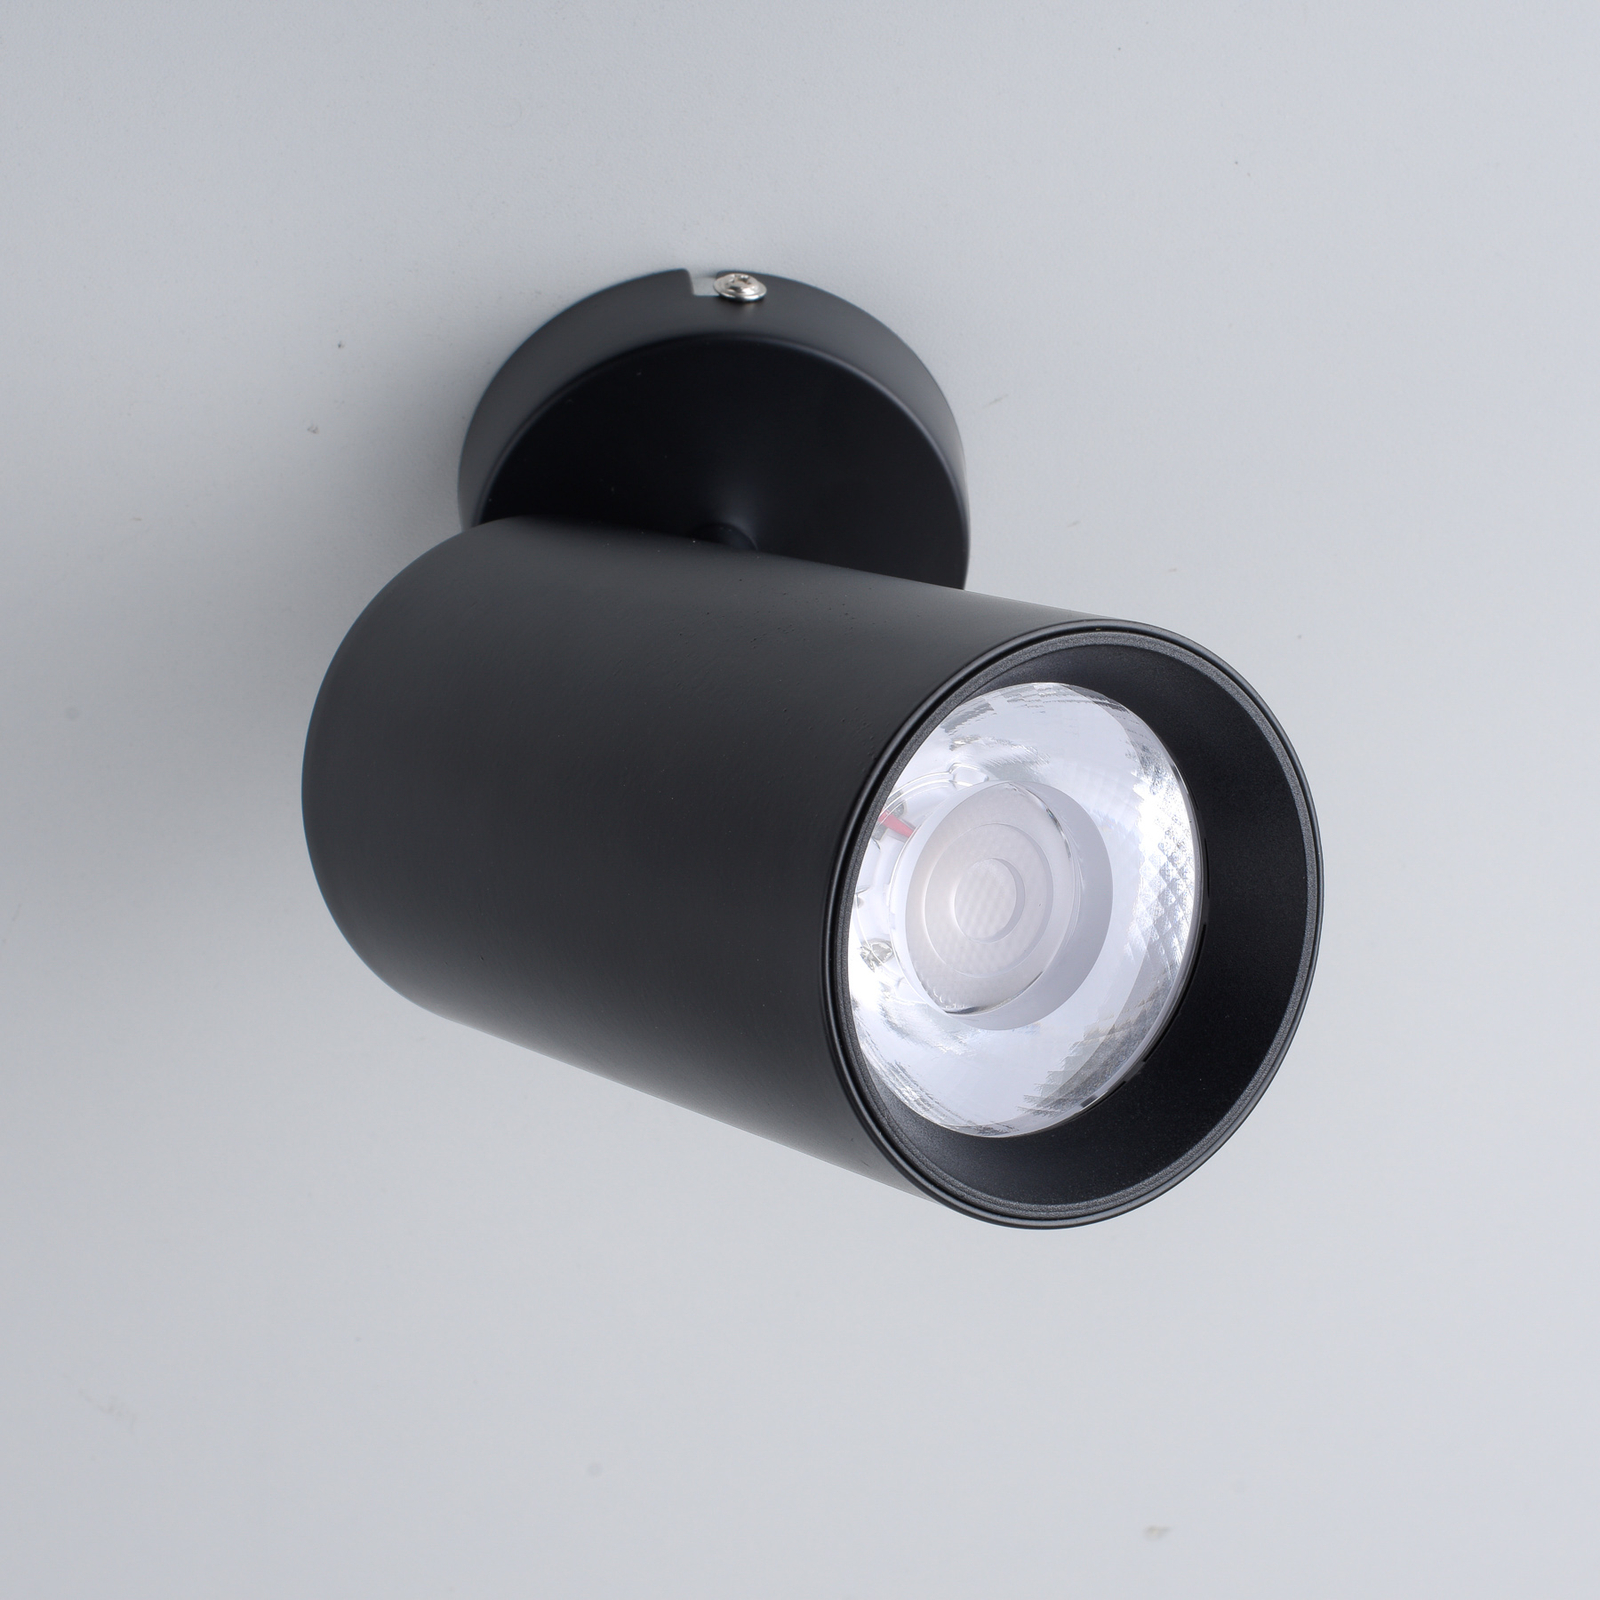 PURE Technik LED spot, Tronic dimmable, black